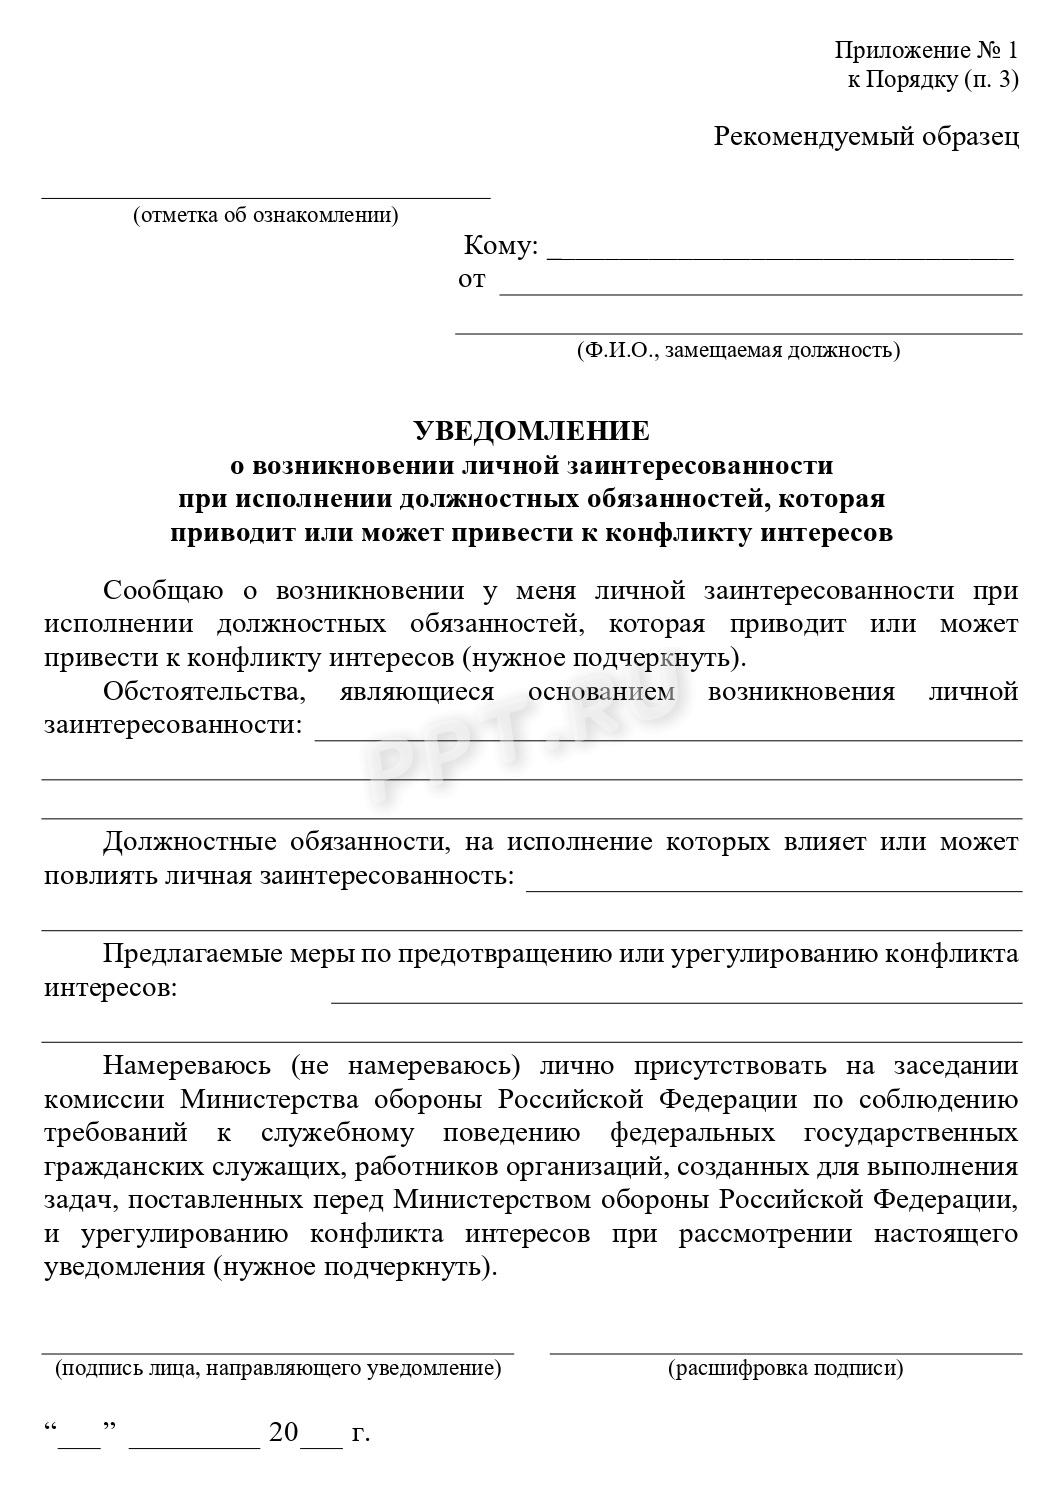 Утвержденная приказом министра обороны РФ форма уведомления